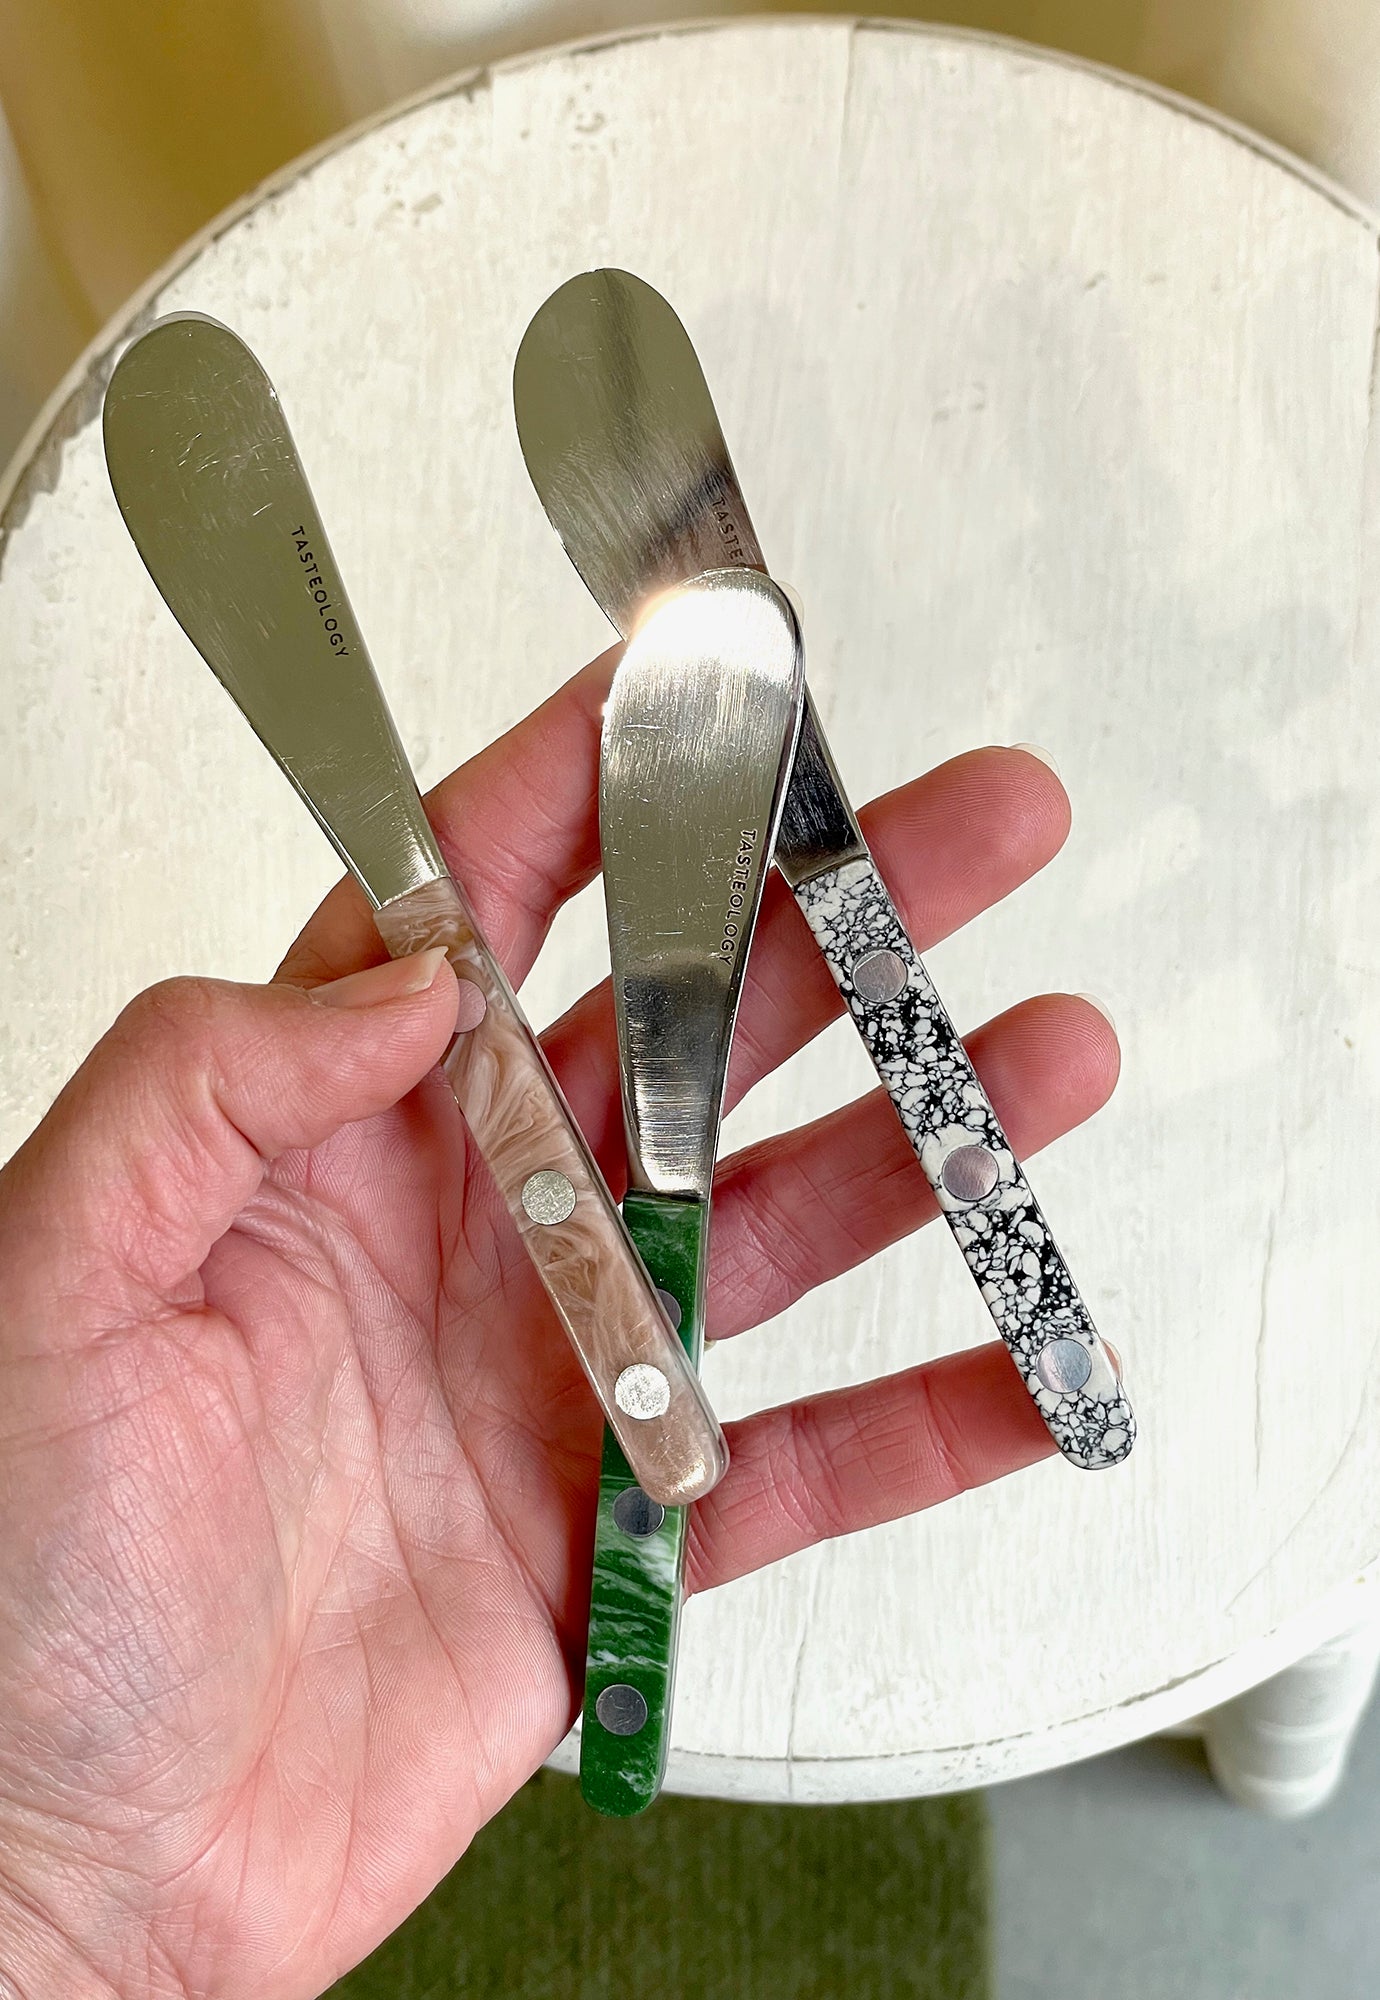 tasteology - spreader knife